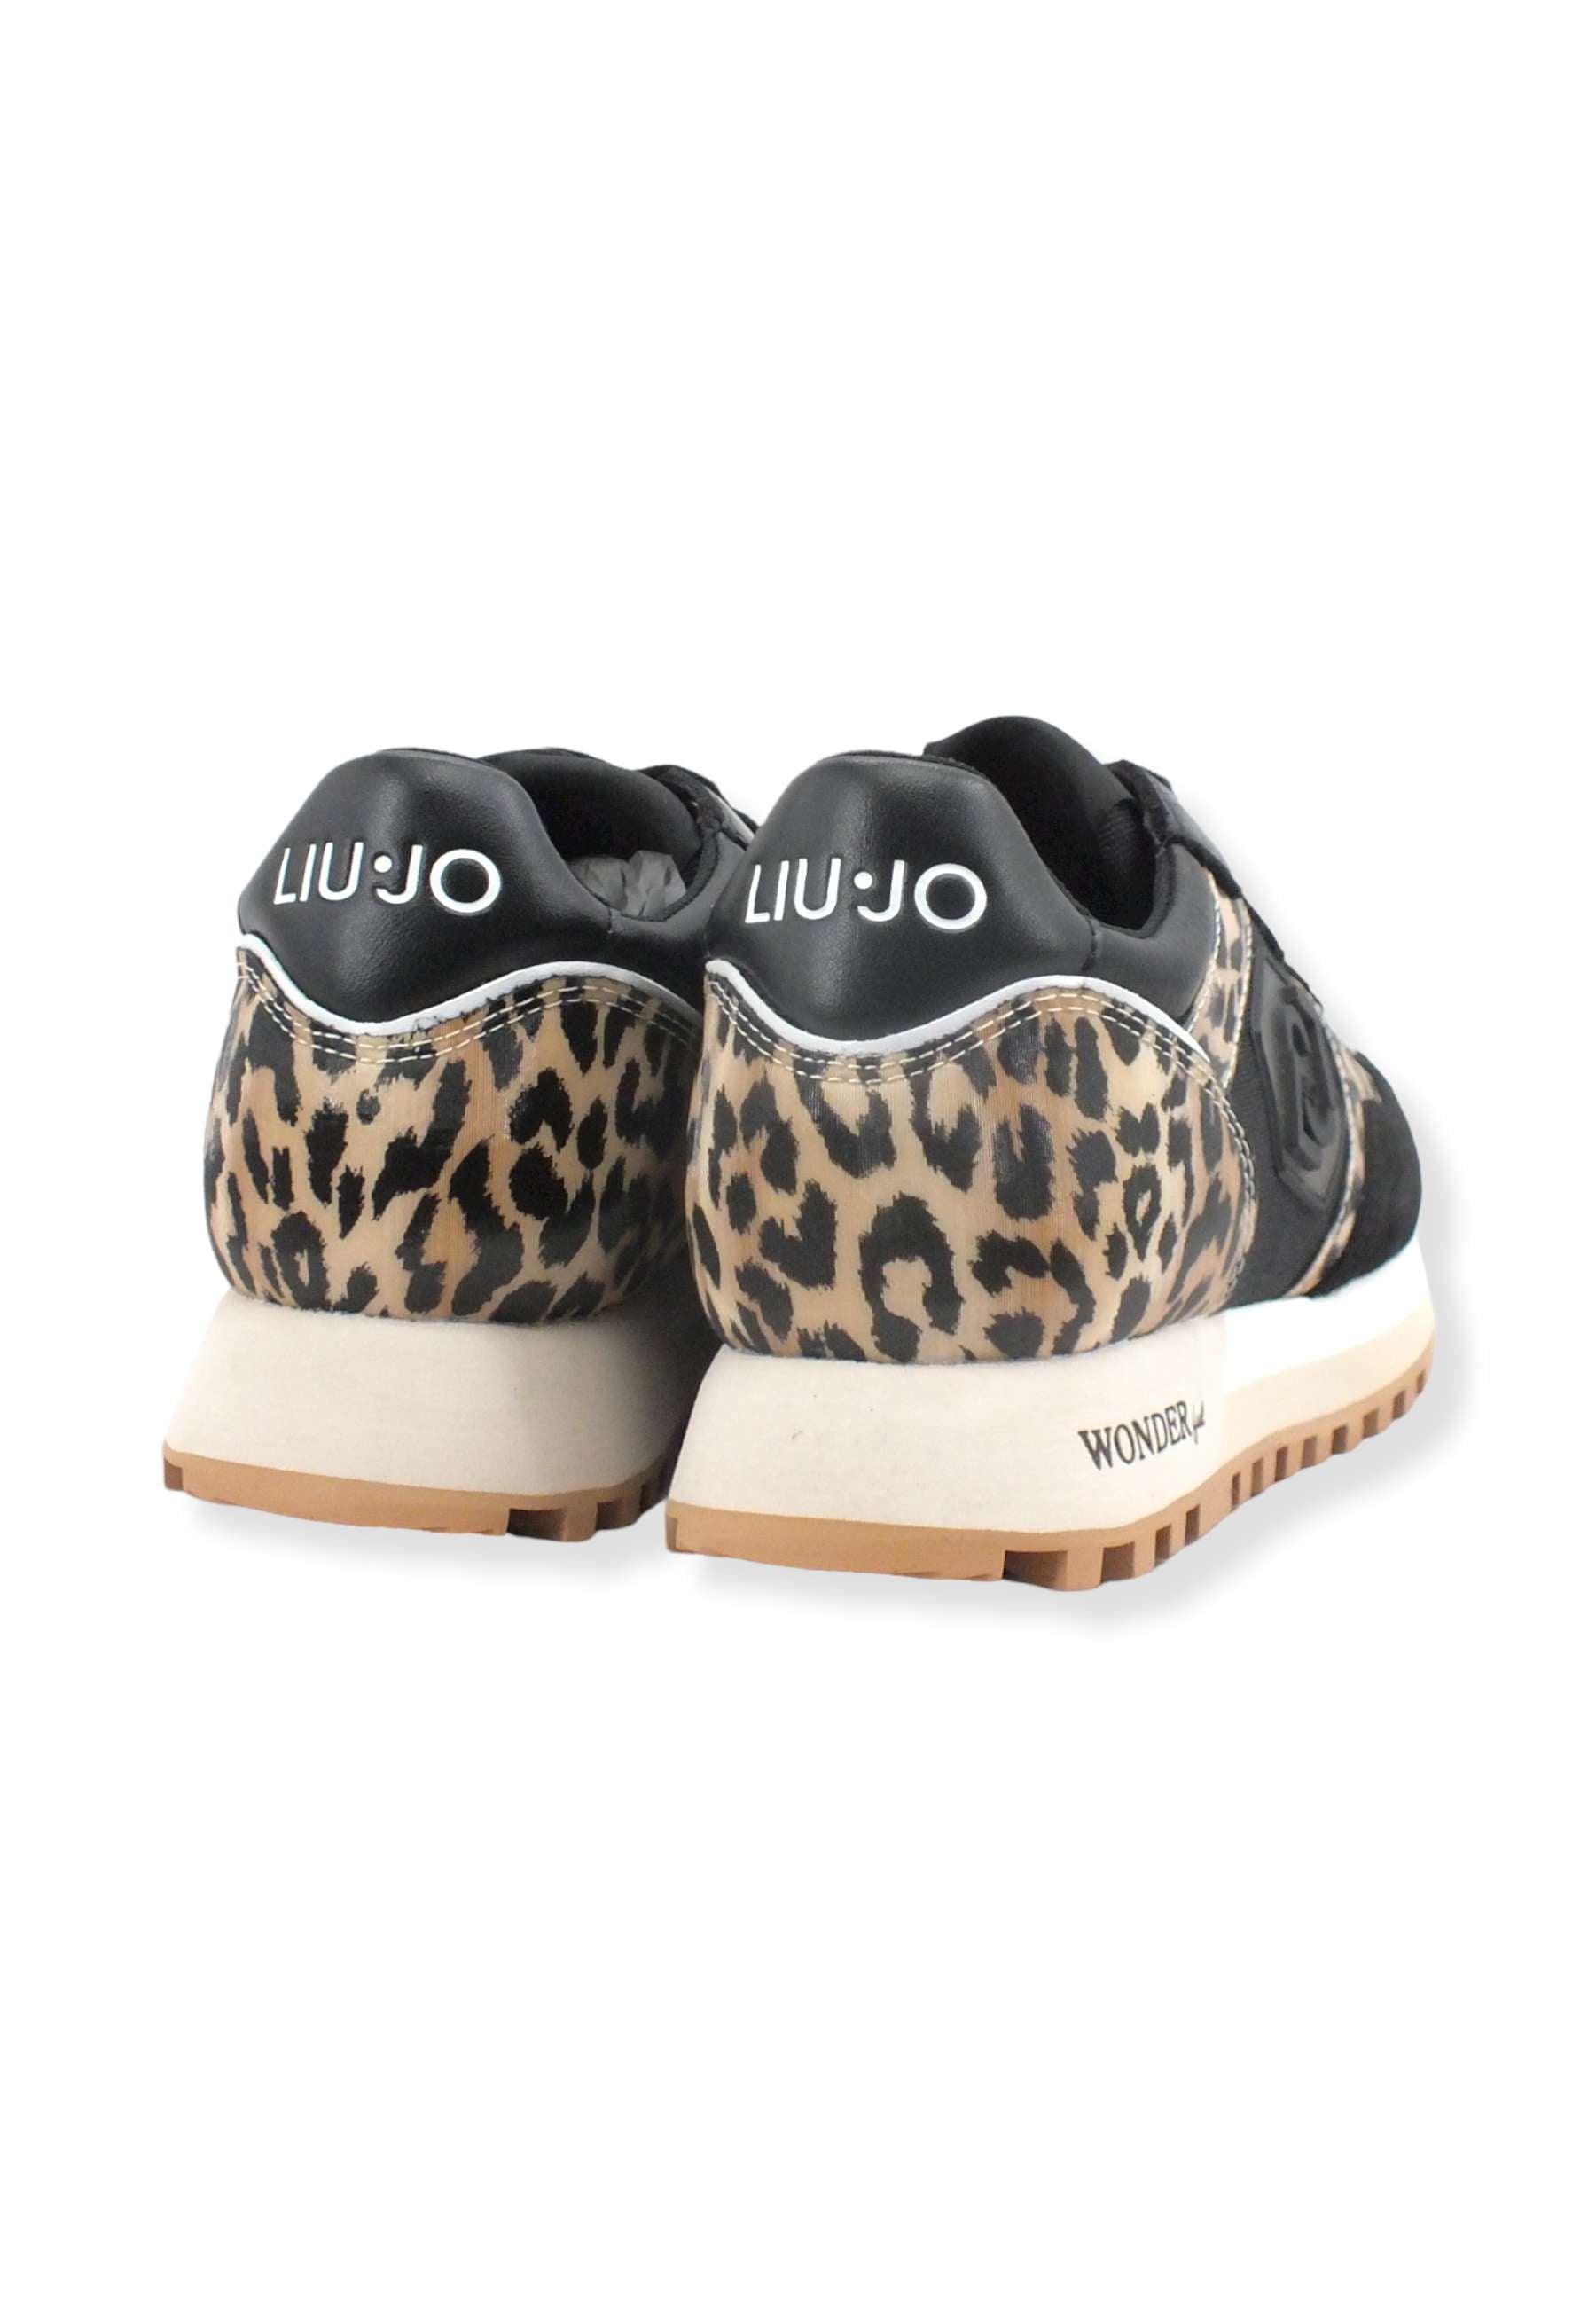 LIU JO Wonder 25 Sneaker Donna Leopard Black BF2067TX078 - Sandrini Calzature e Abbigliamento